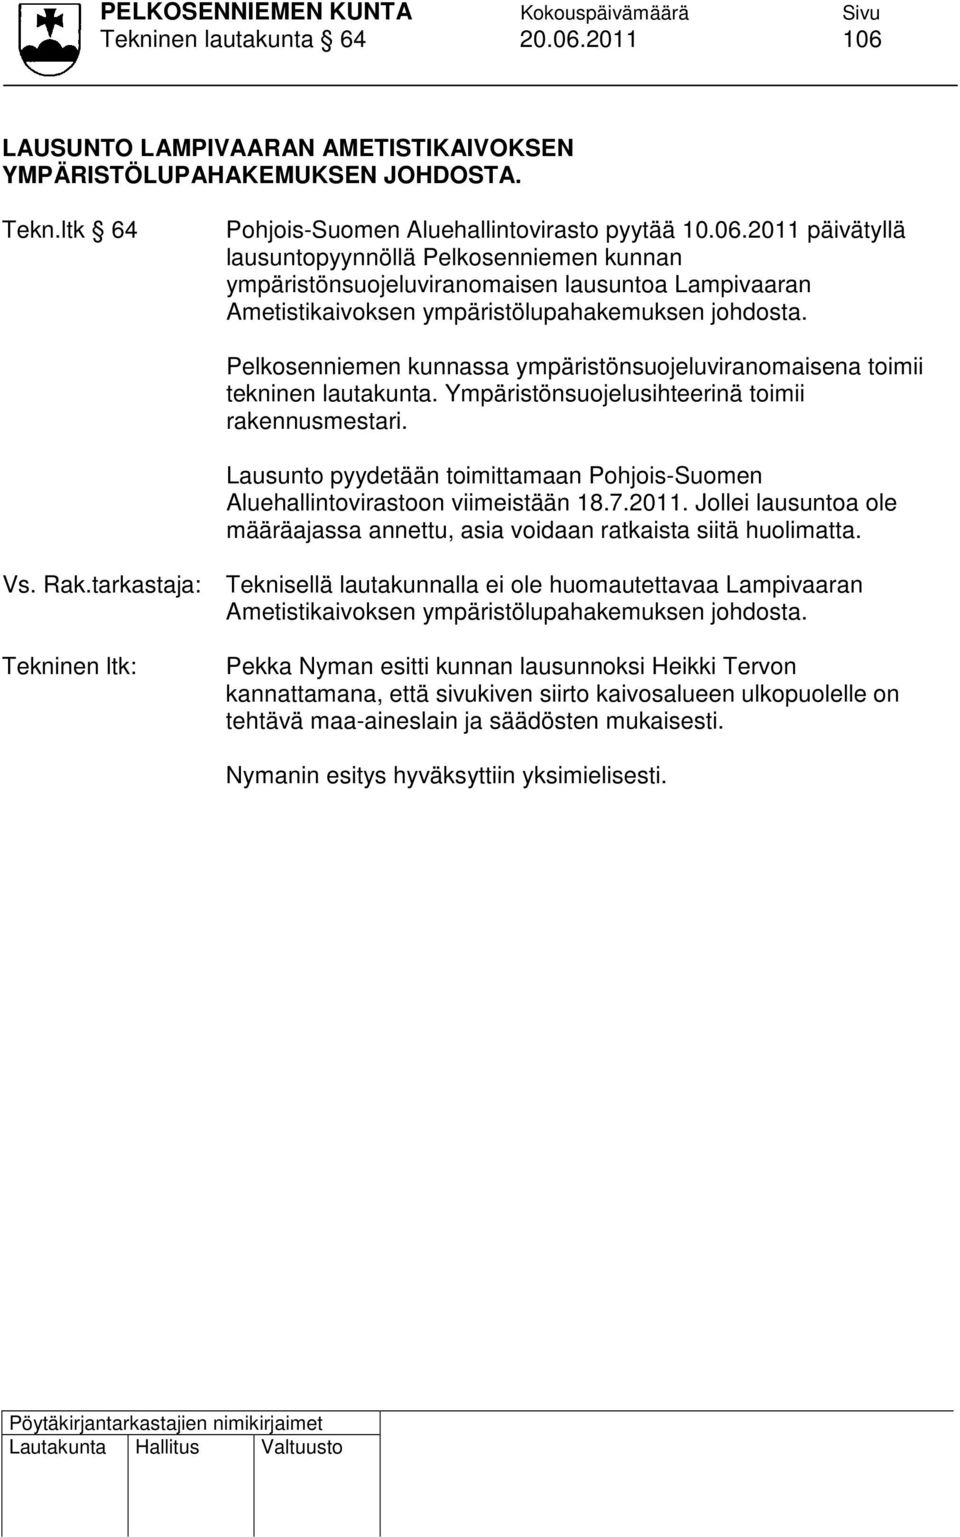 Lausunto pyydetään toimittamaan Pohjois-Suomen Aluehallintovirastoon viimeistään 18.7.2011. Jollei lausuntoa ole määräajassa annettu, asia voidaan ratkaista siitä huolimatta.